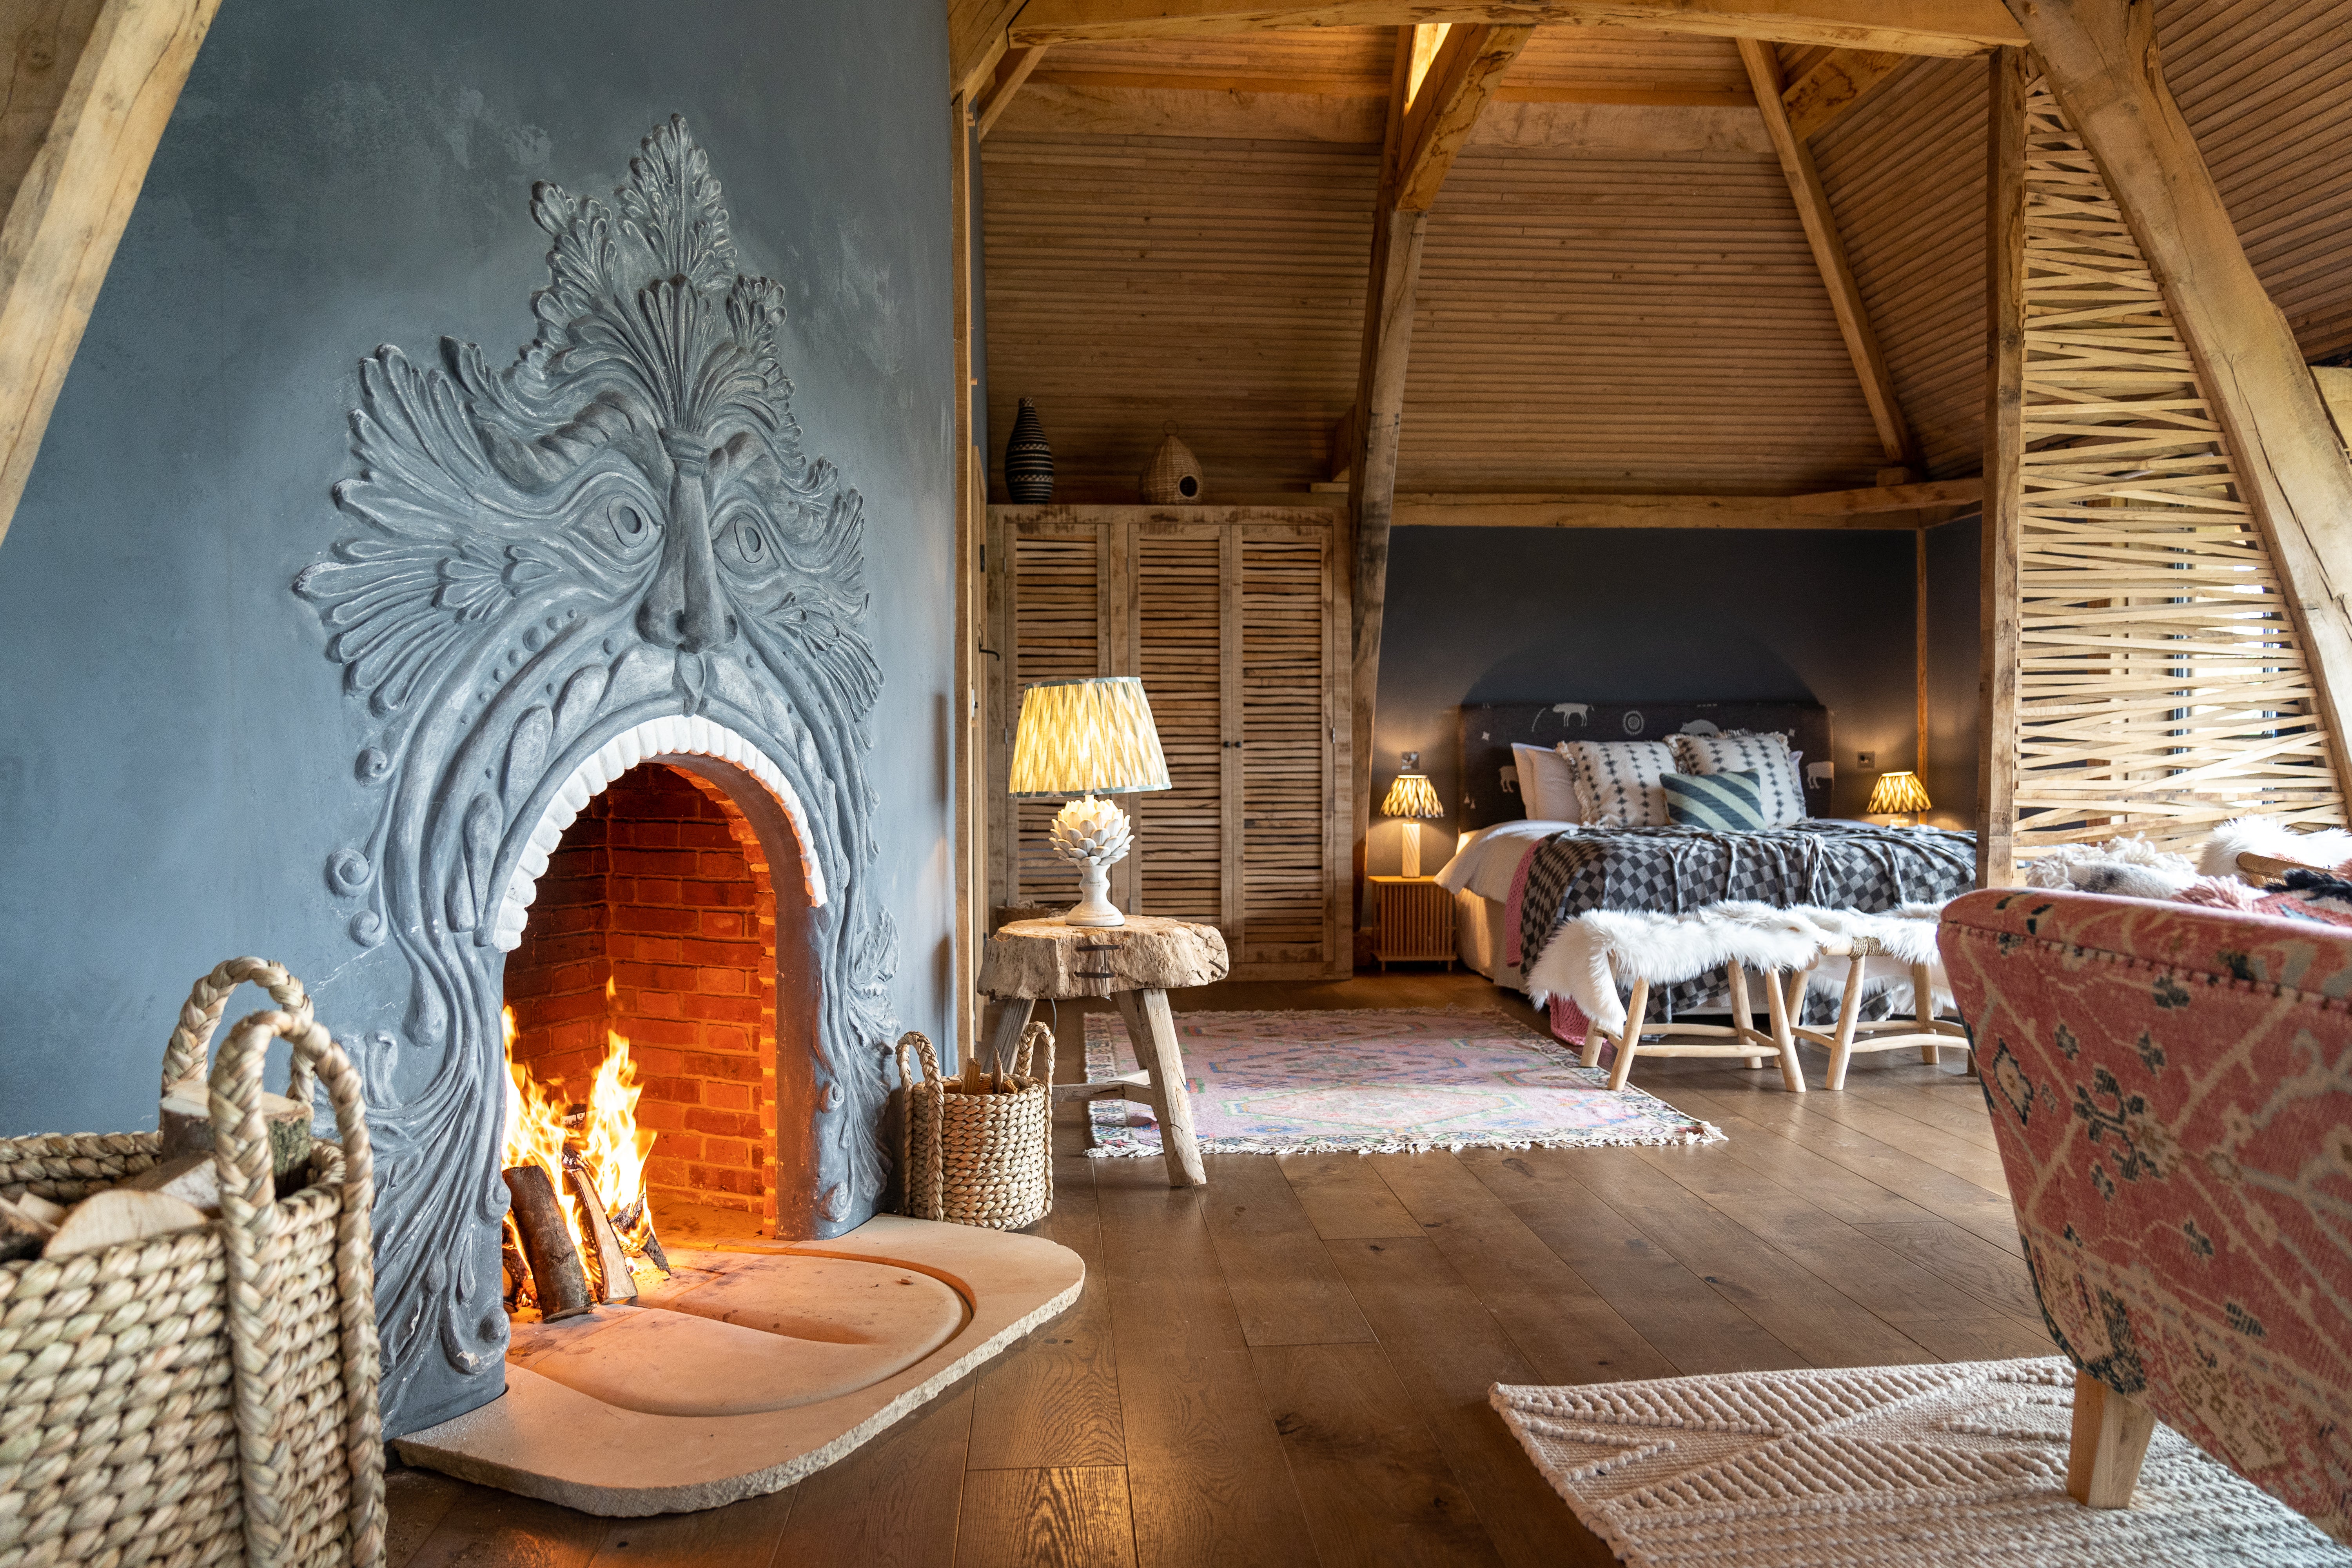 Wilderness Retreat bedrooms combine luxury with cosiness